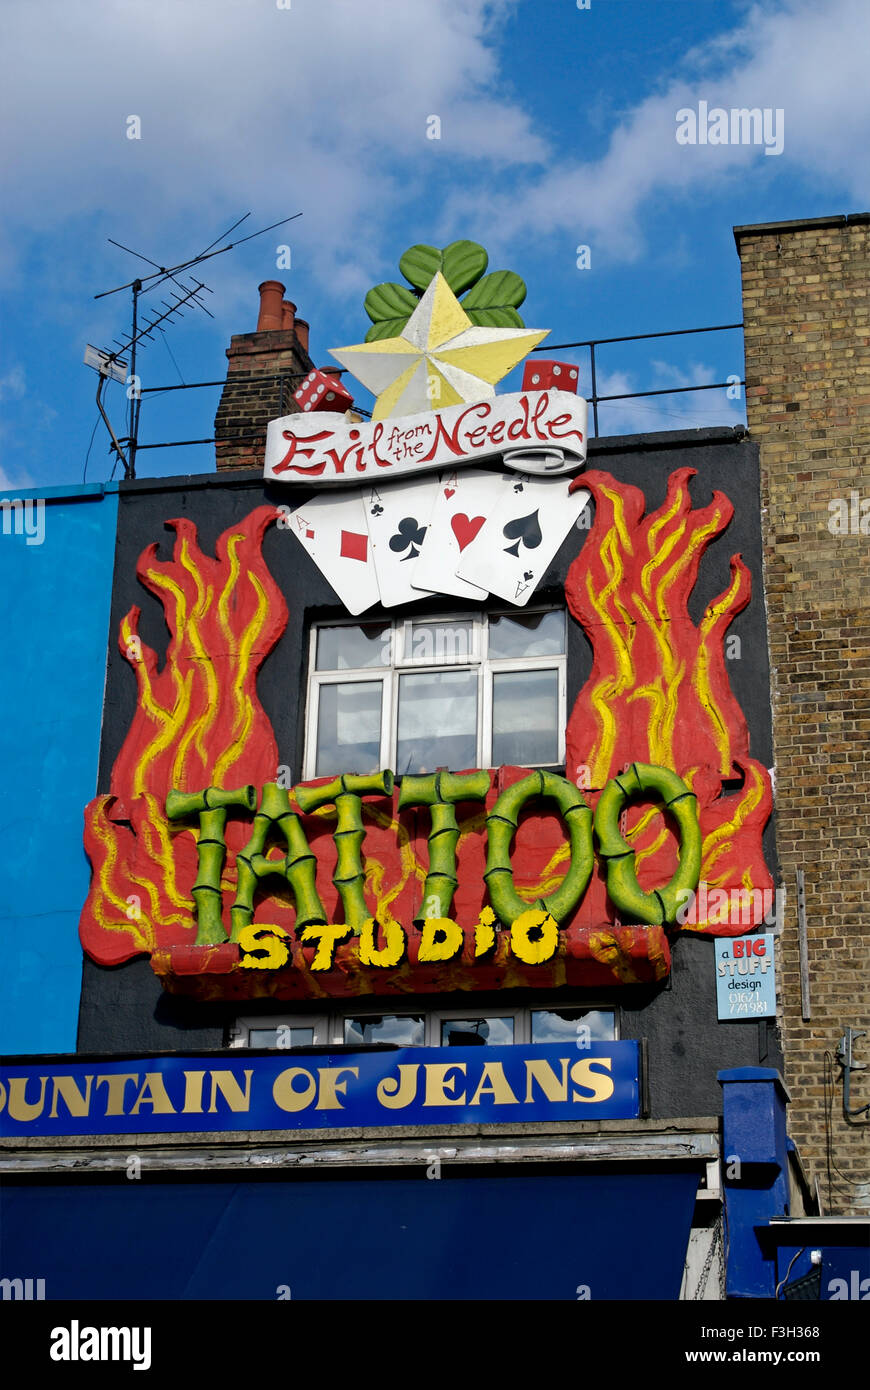 Tatouage Studio, Evil de l'aiguille, Fontaine de Jean, Camden Town, Londres, Angleterre, Royaume-Uni Banque D'Images